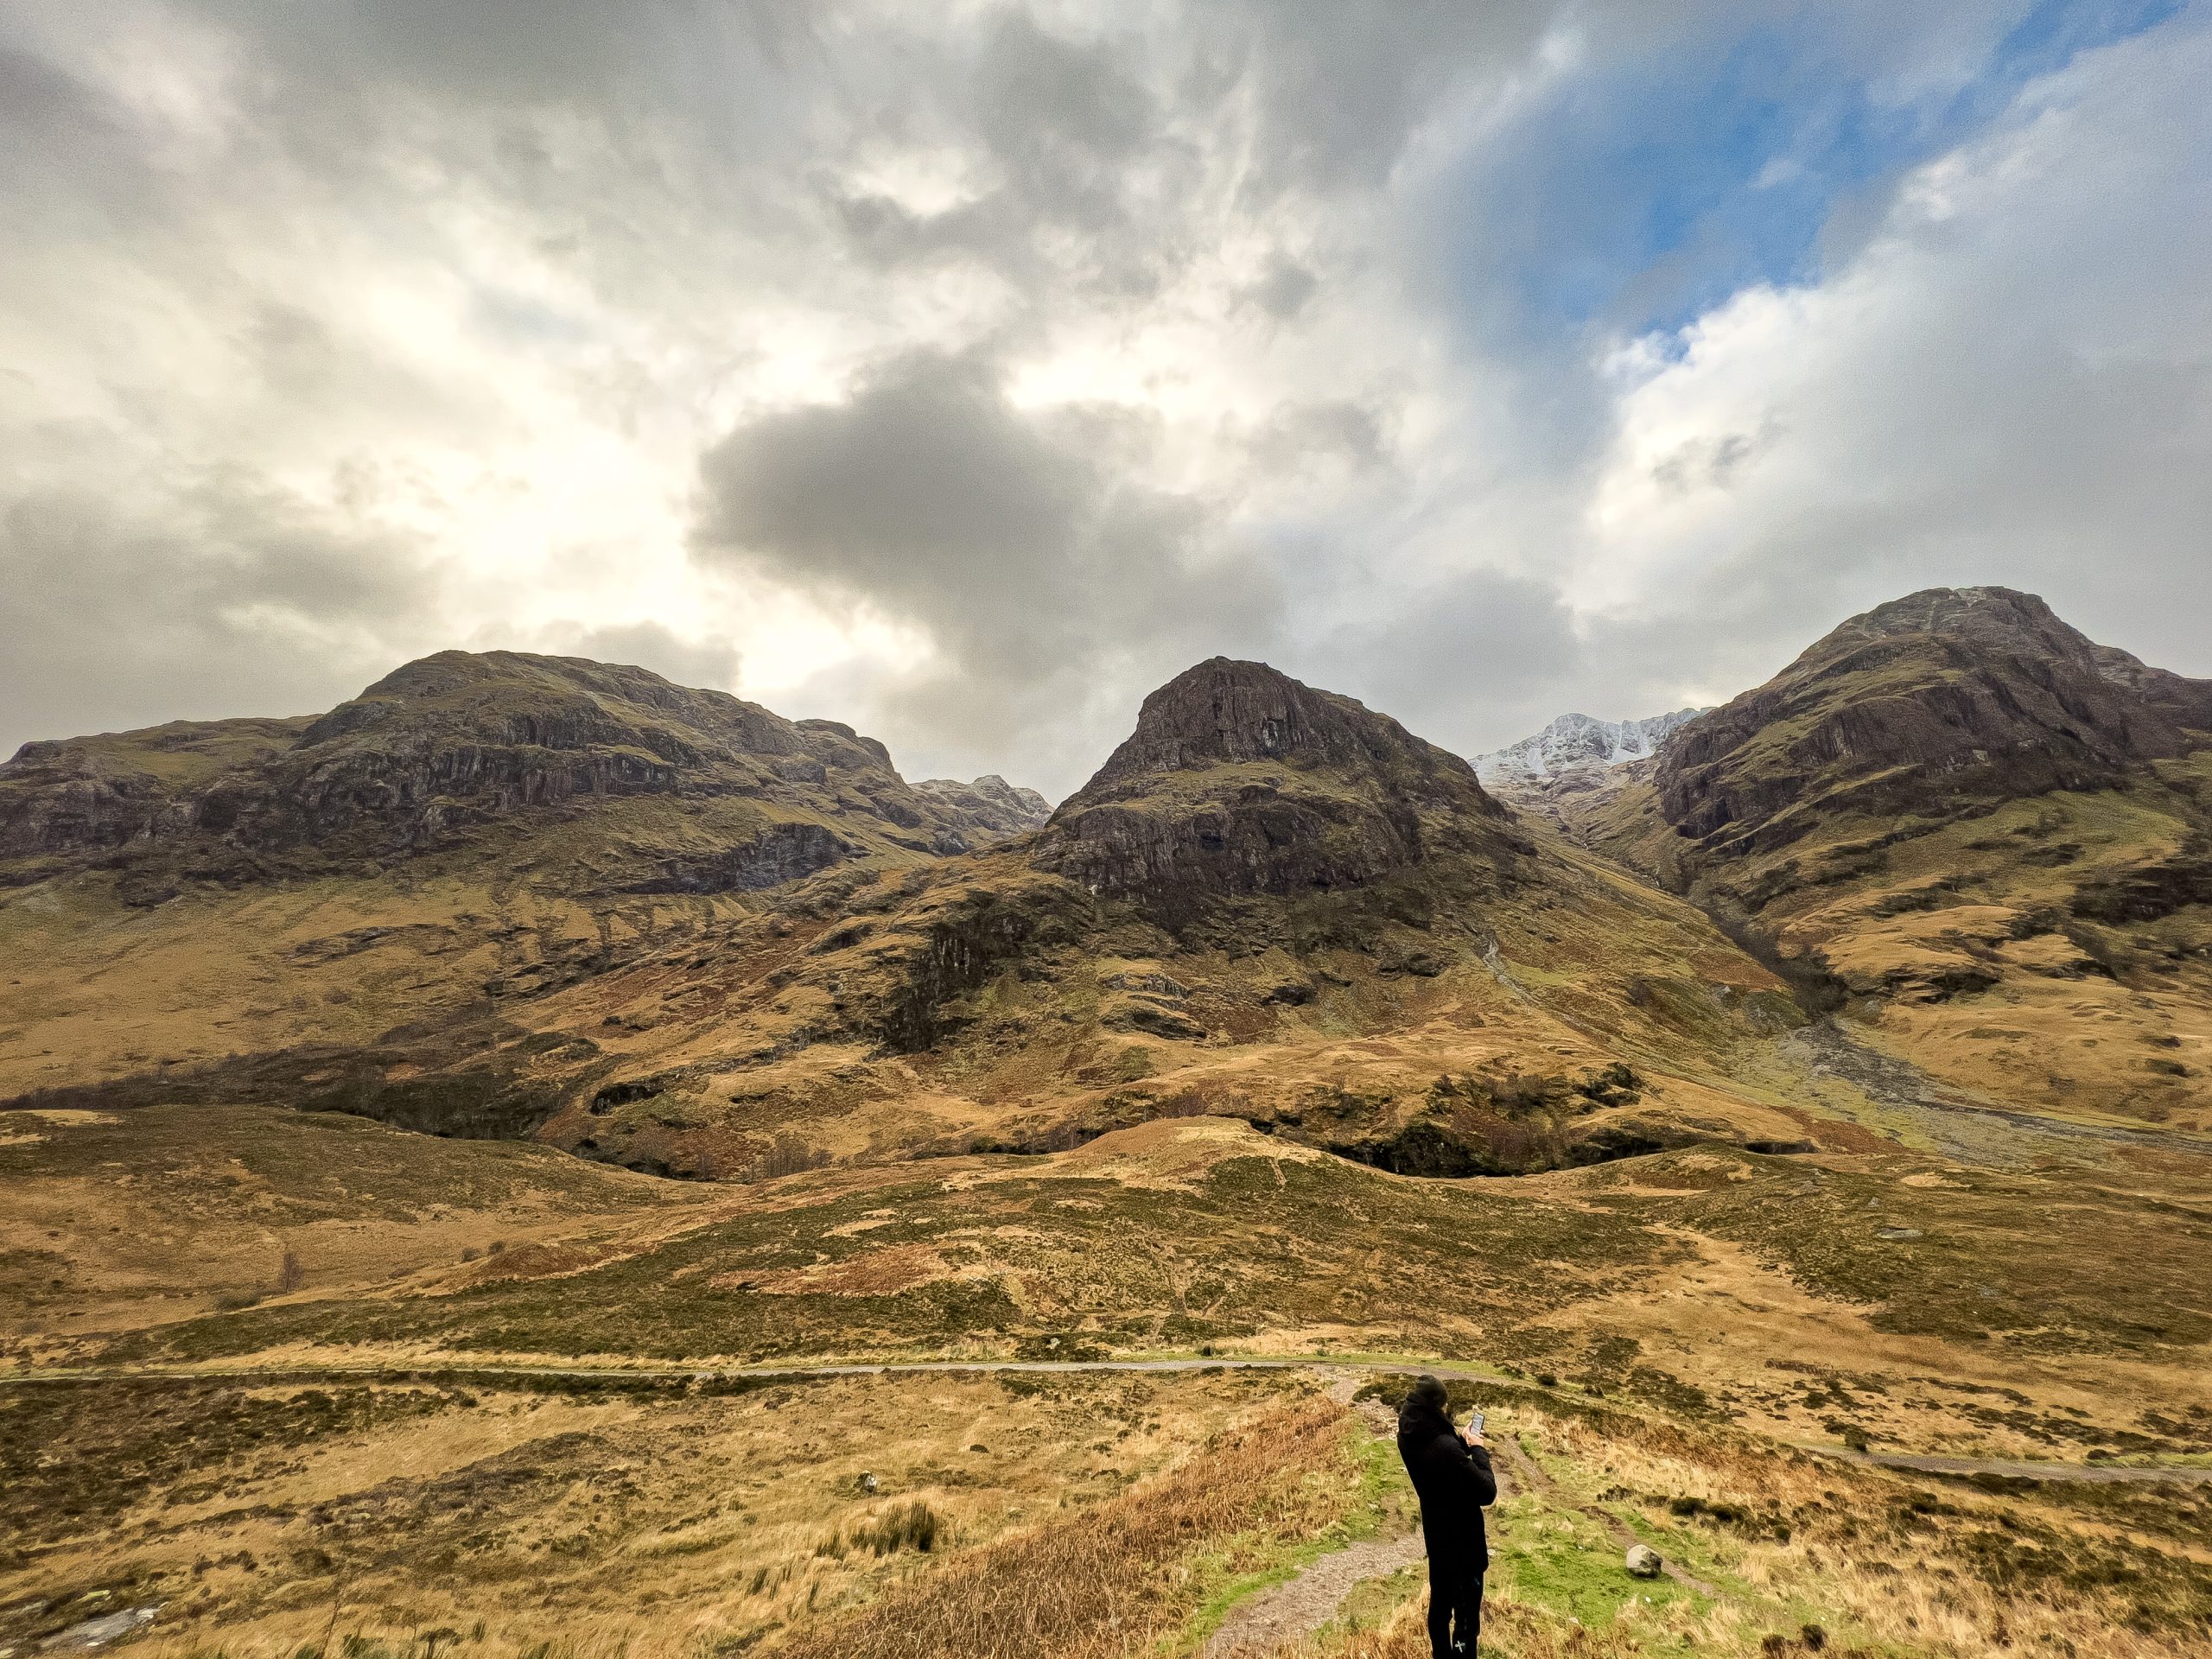 Wzgórza Trzy Siostry, Glencoe, Highlands, Szkocja - miejsce historyczne, które warto zobaczyć w Szkocji